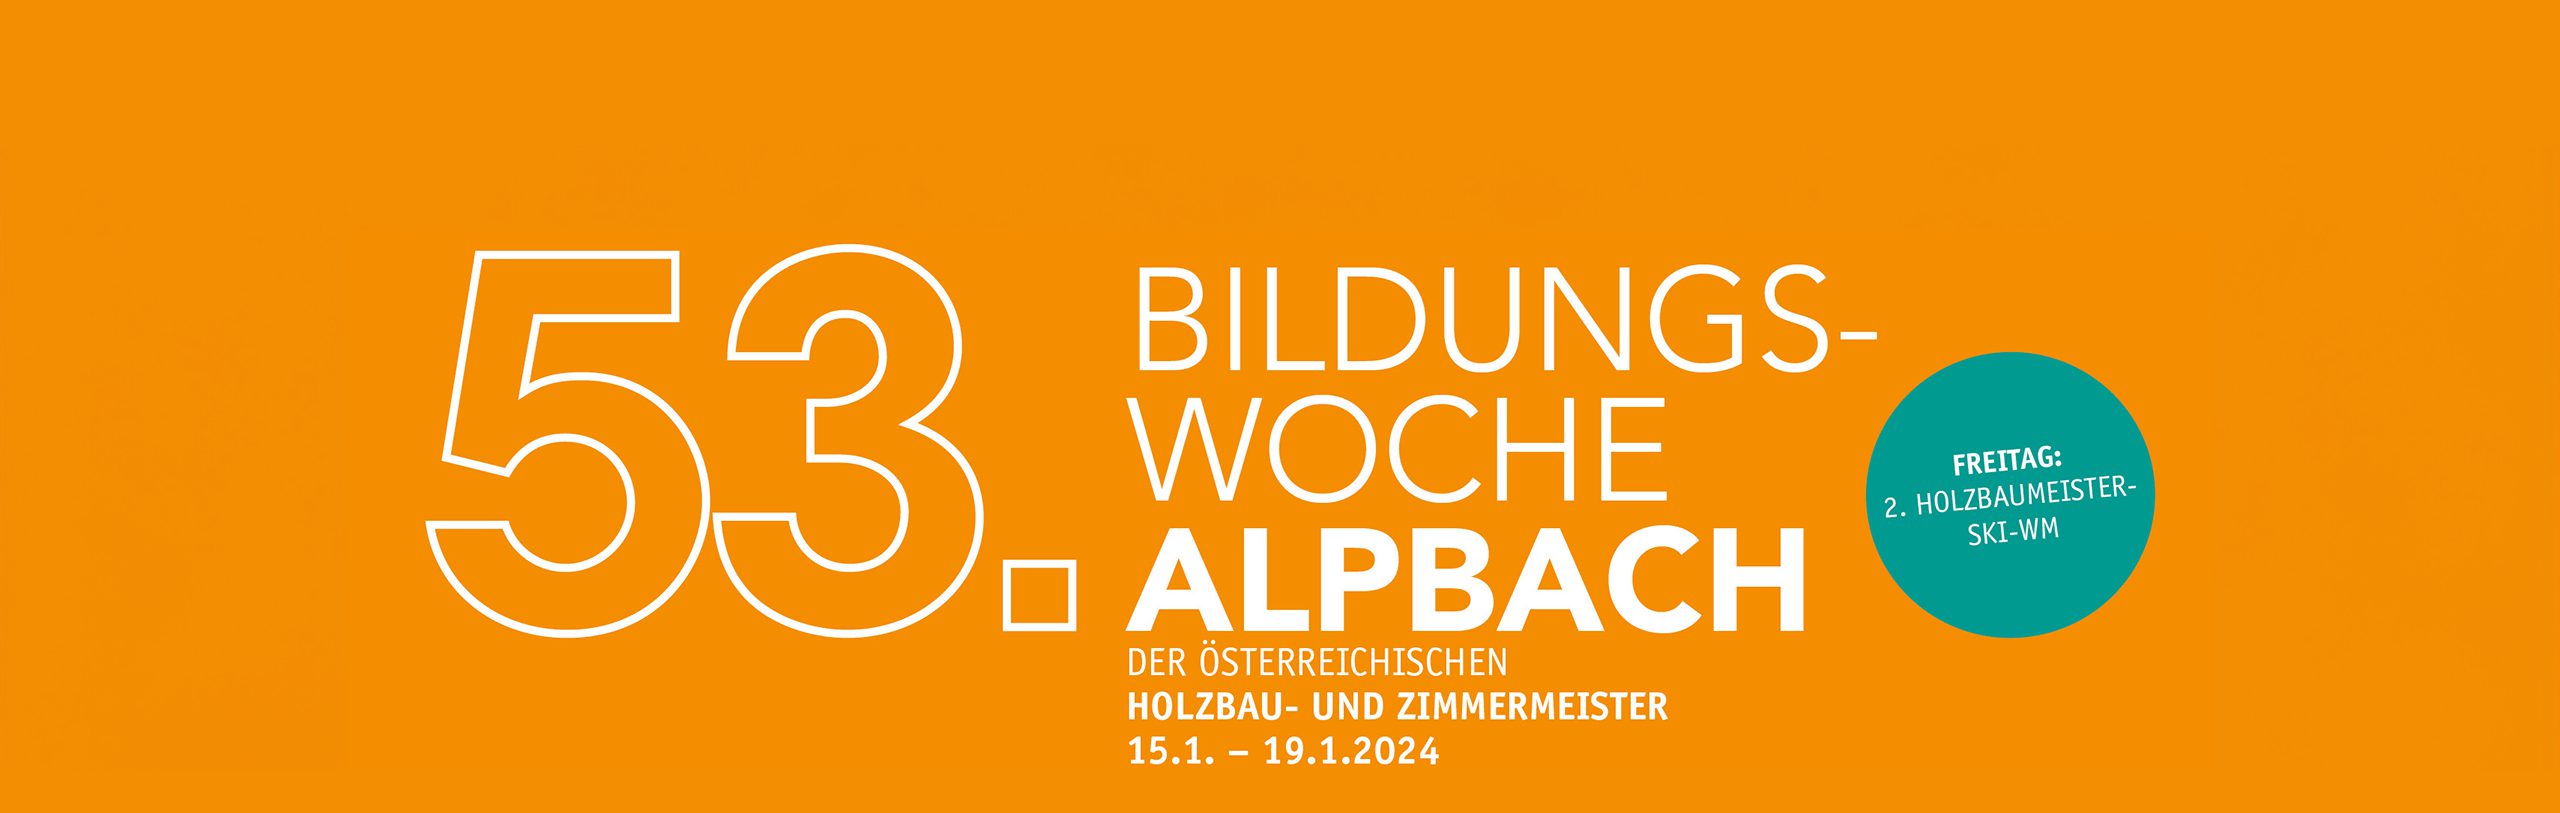 Banner-Bildungswoche AlpbachBB